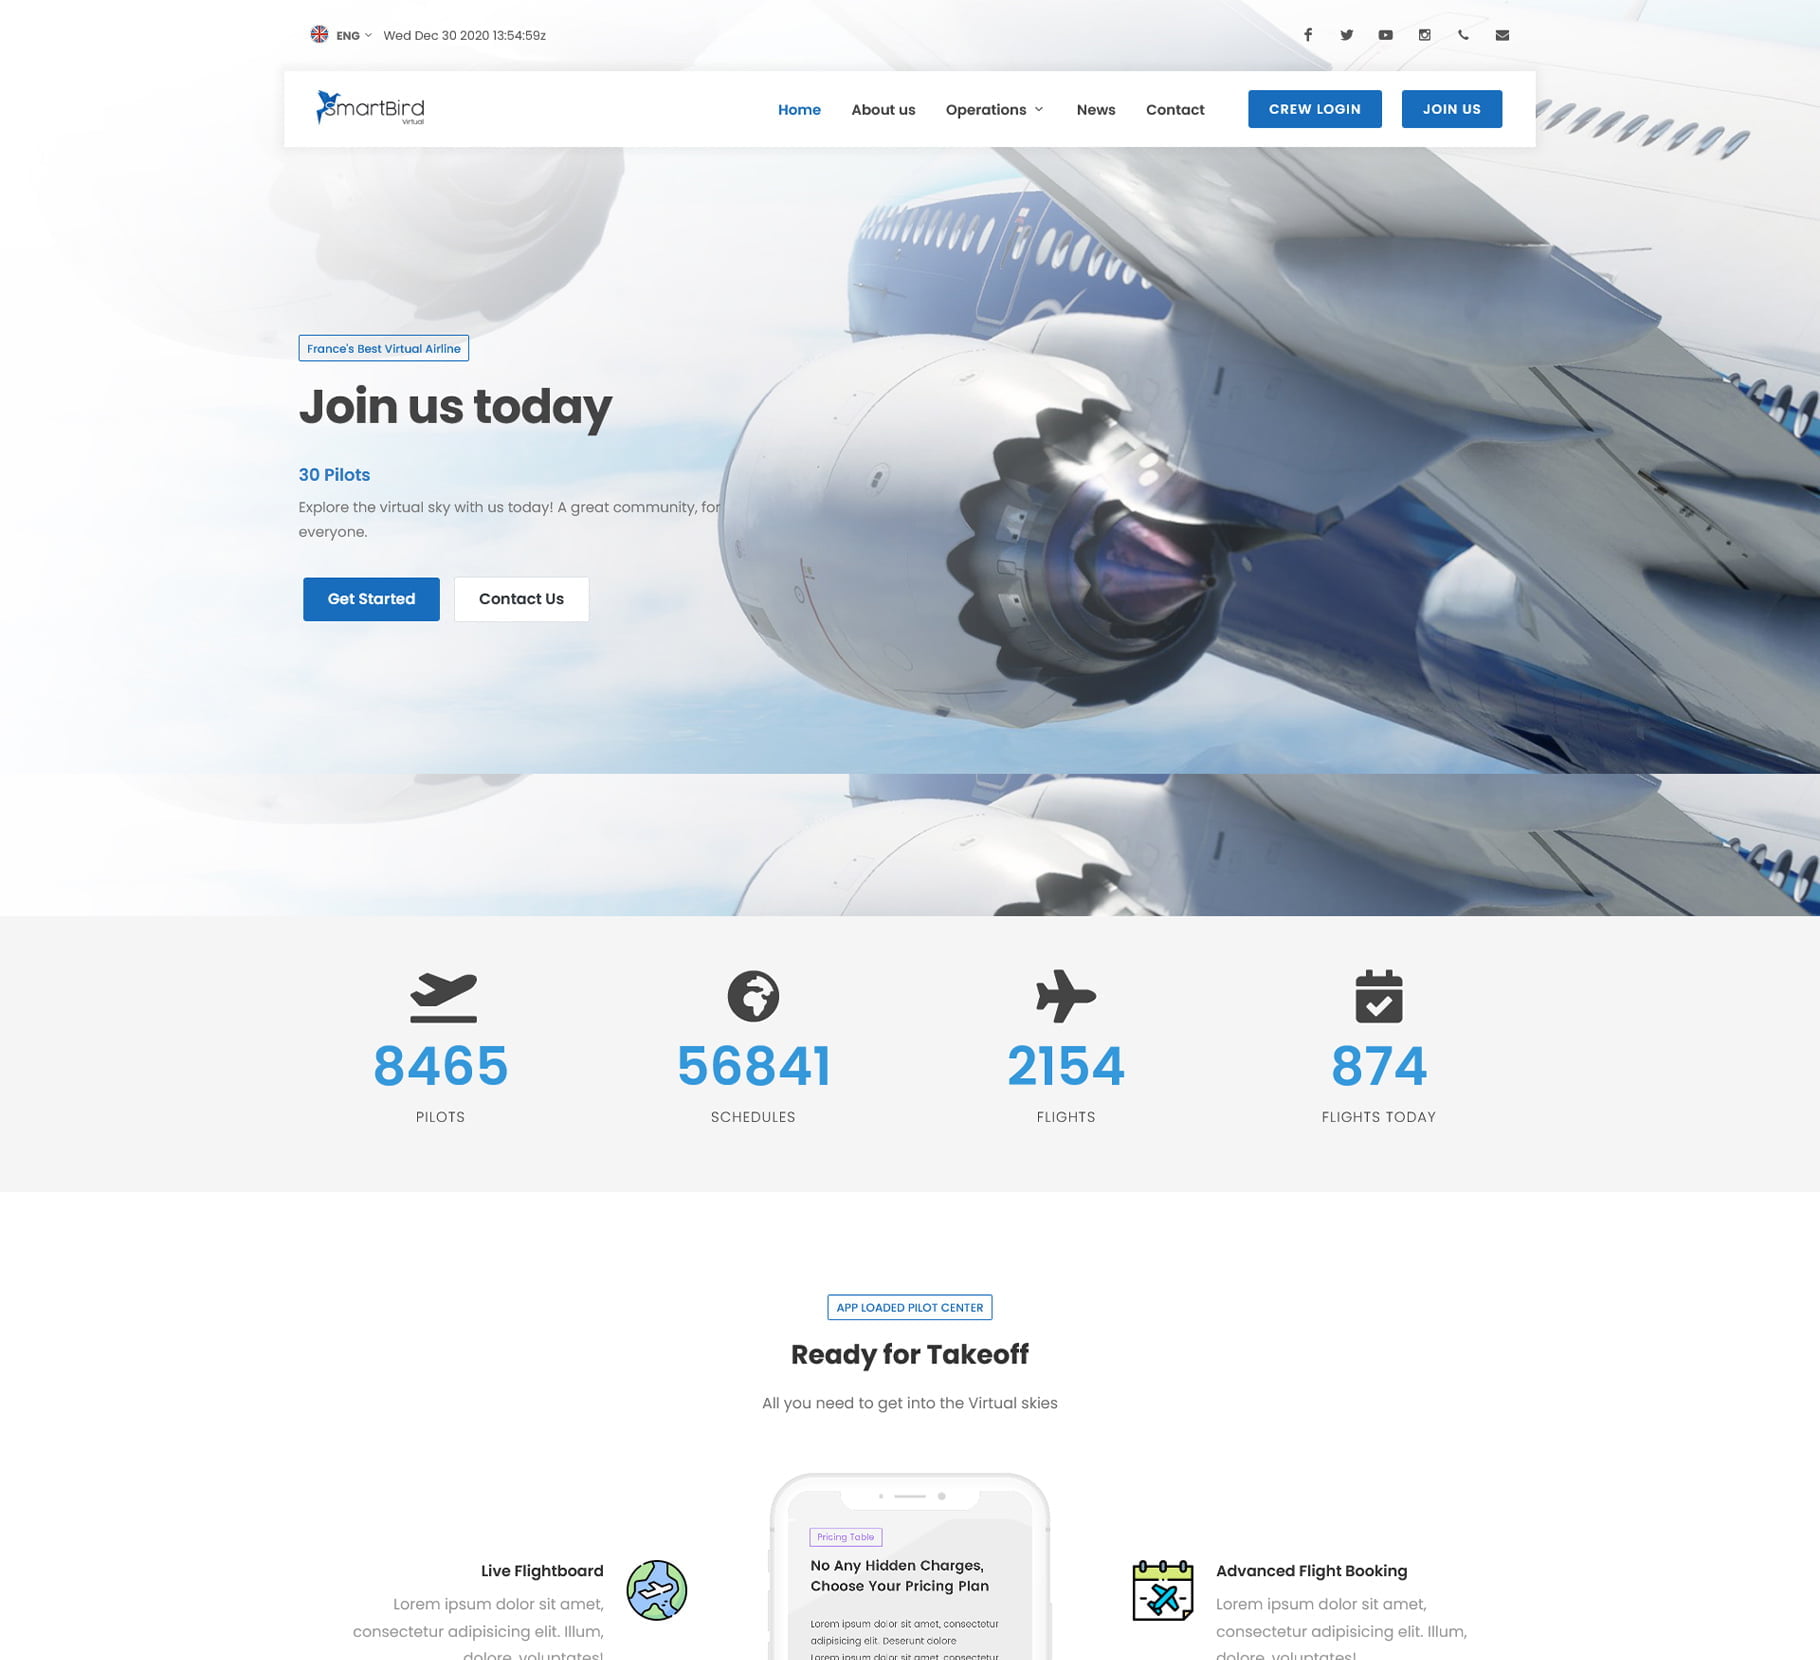 Smartbird VA phpVMS website design